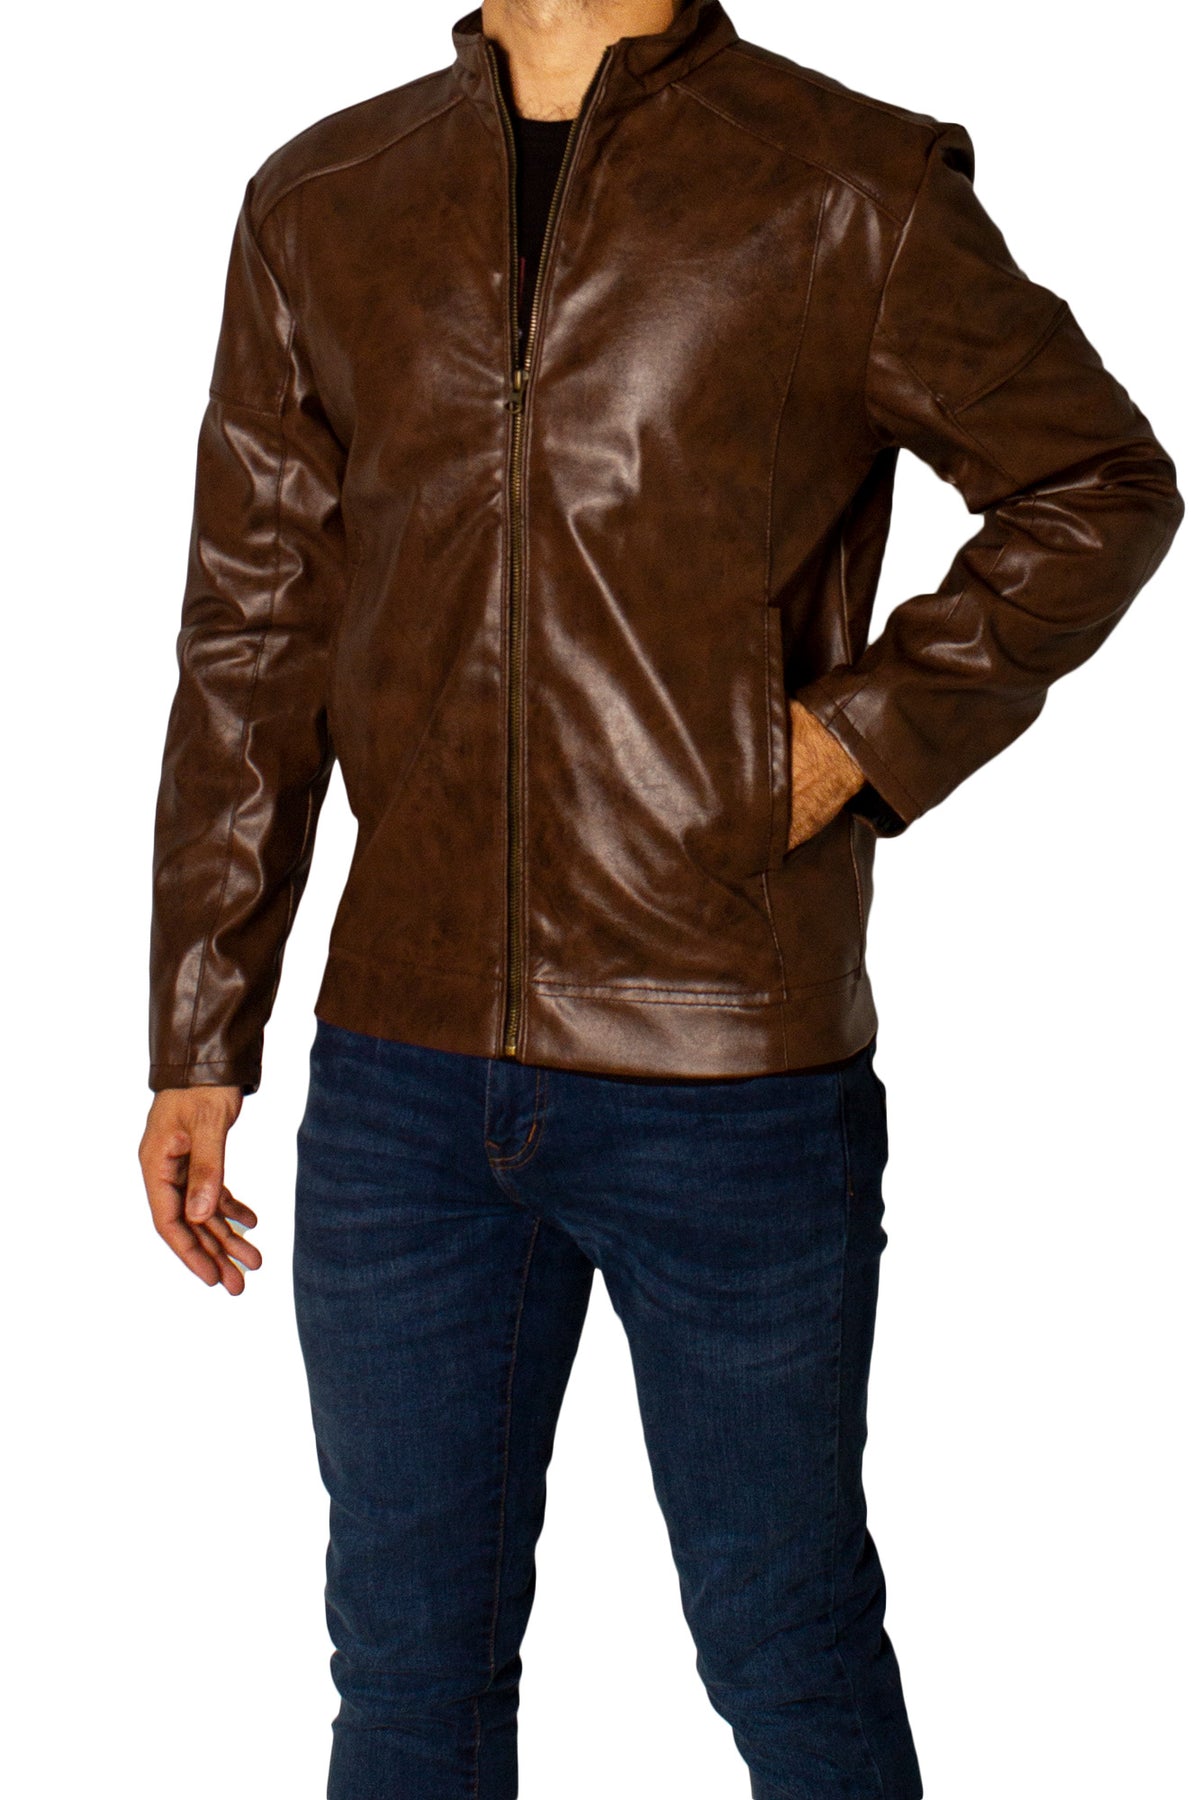 Men's Faux Leather Jacket Jk-0287 D.Brown